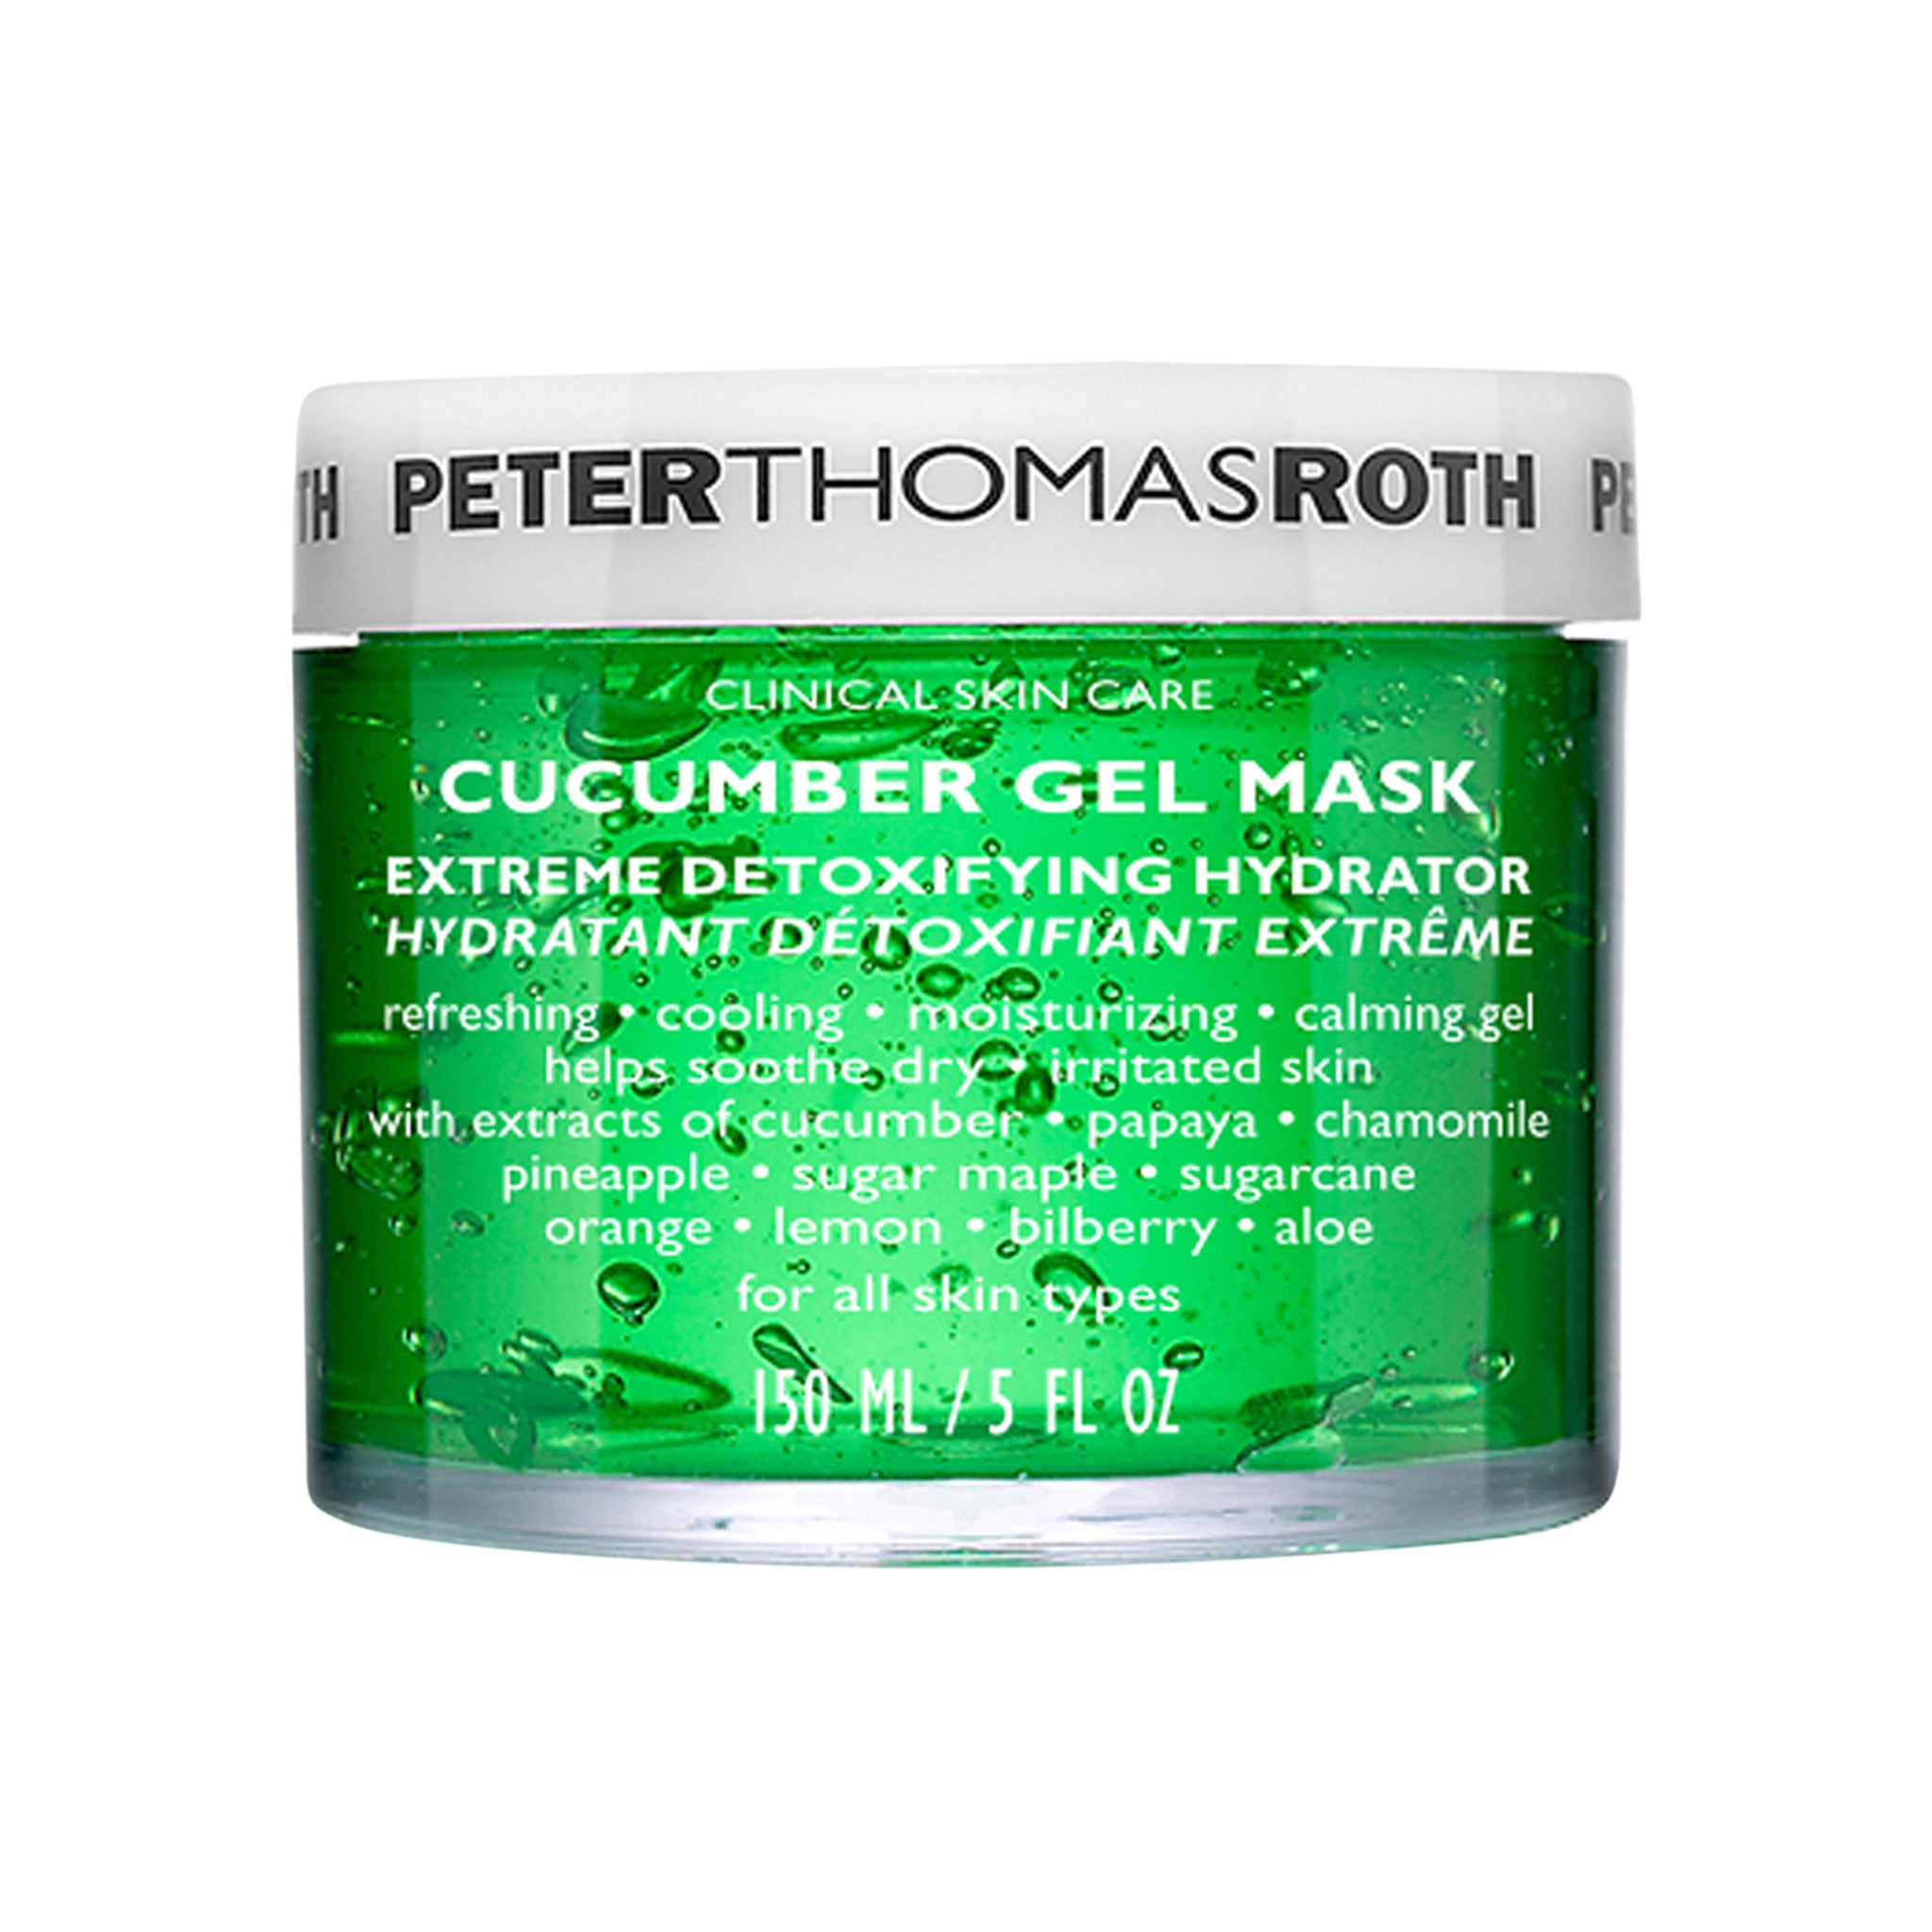 Peter Thomas Roth Cucumber Gel Mask main image.